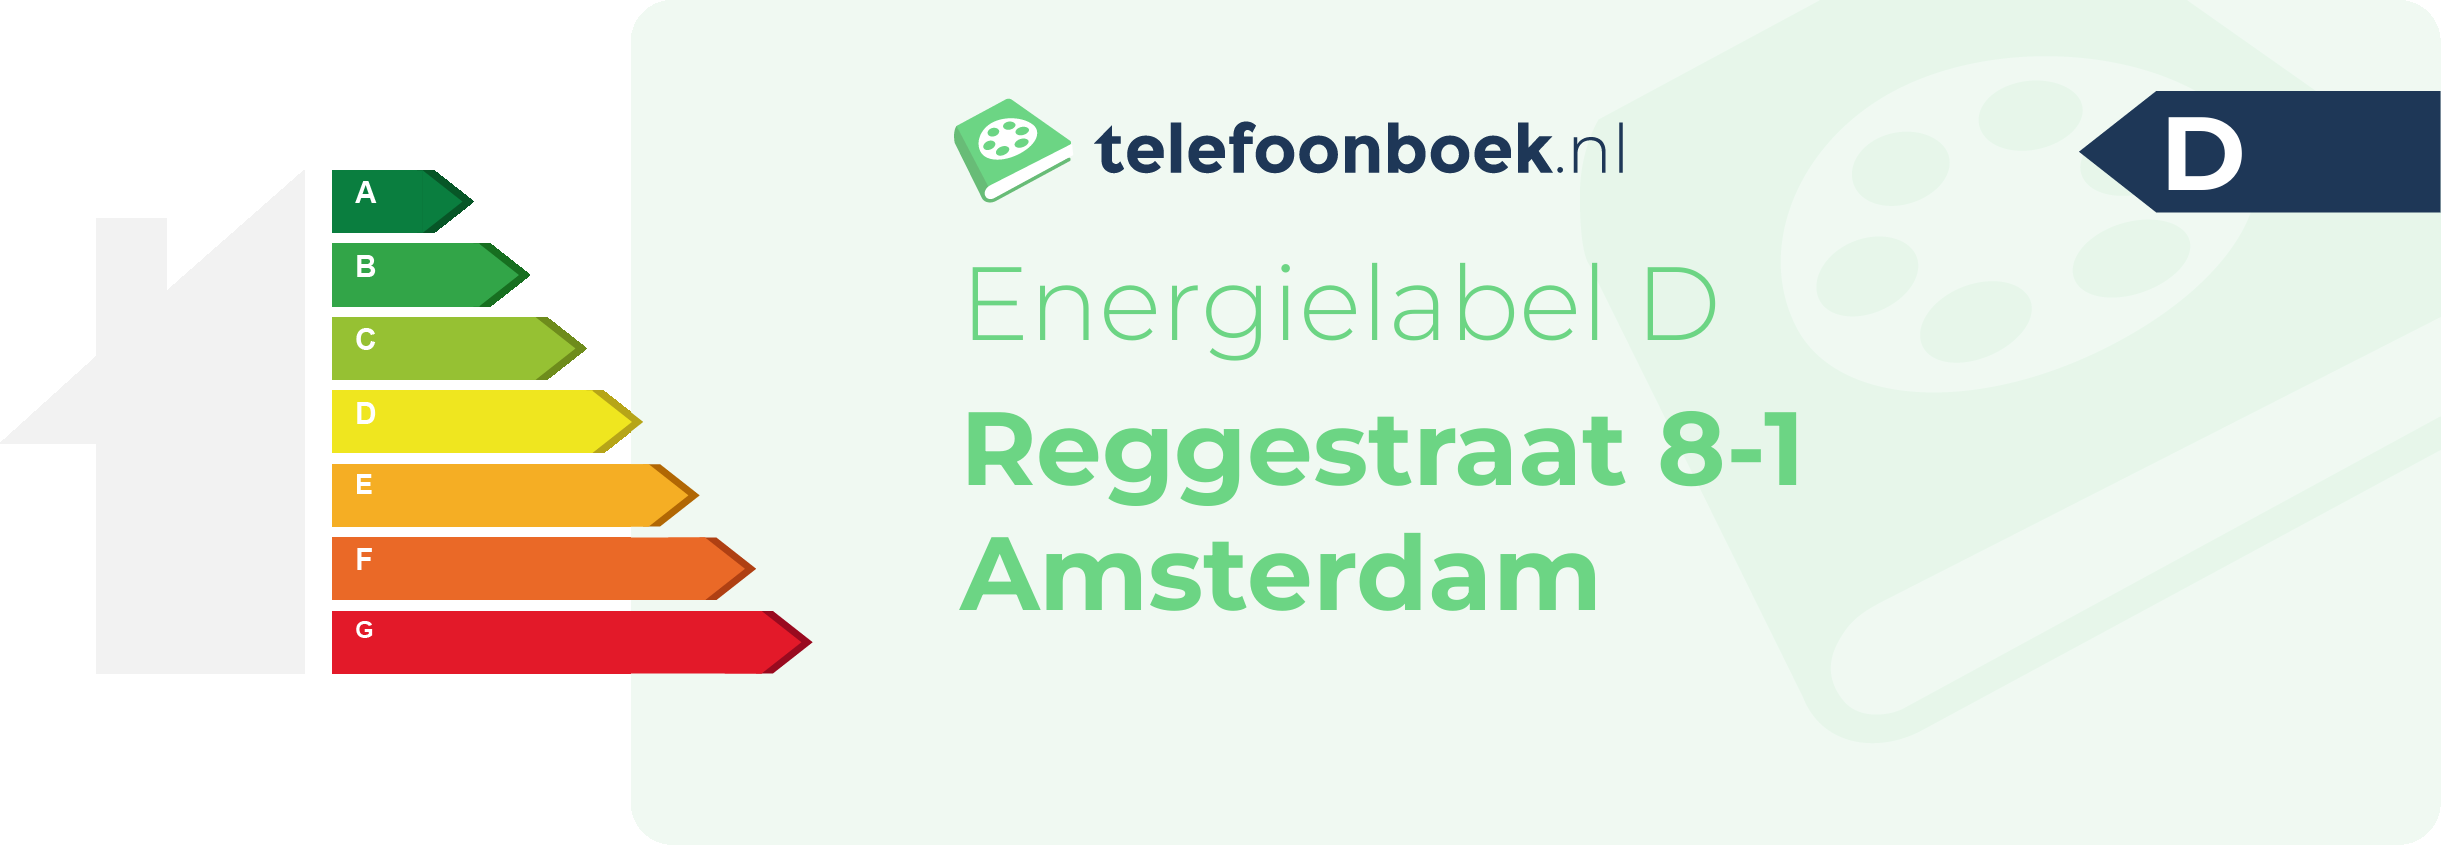 Energielabel Reggestraat 8-1 Amsterdam